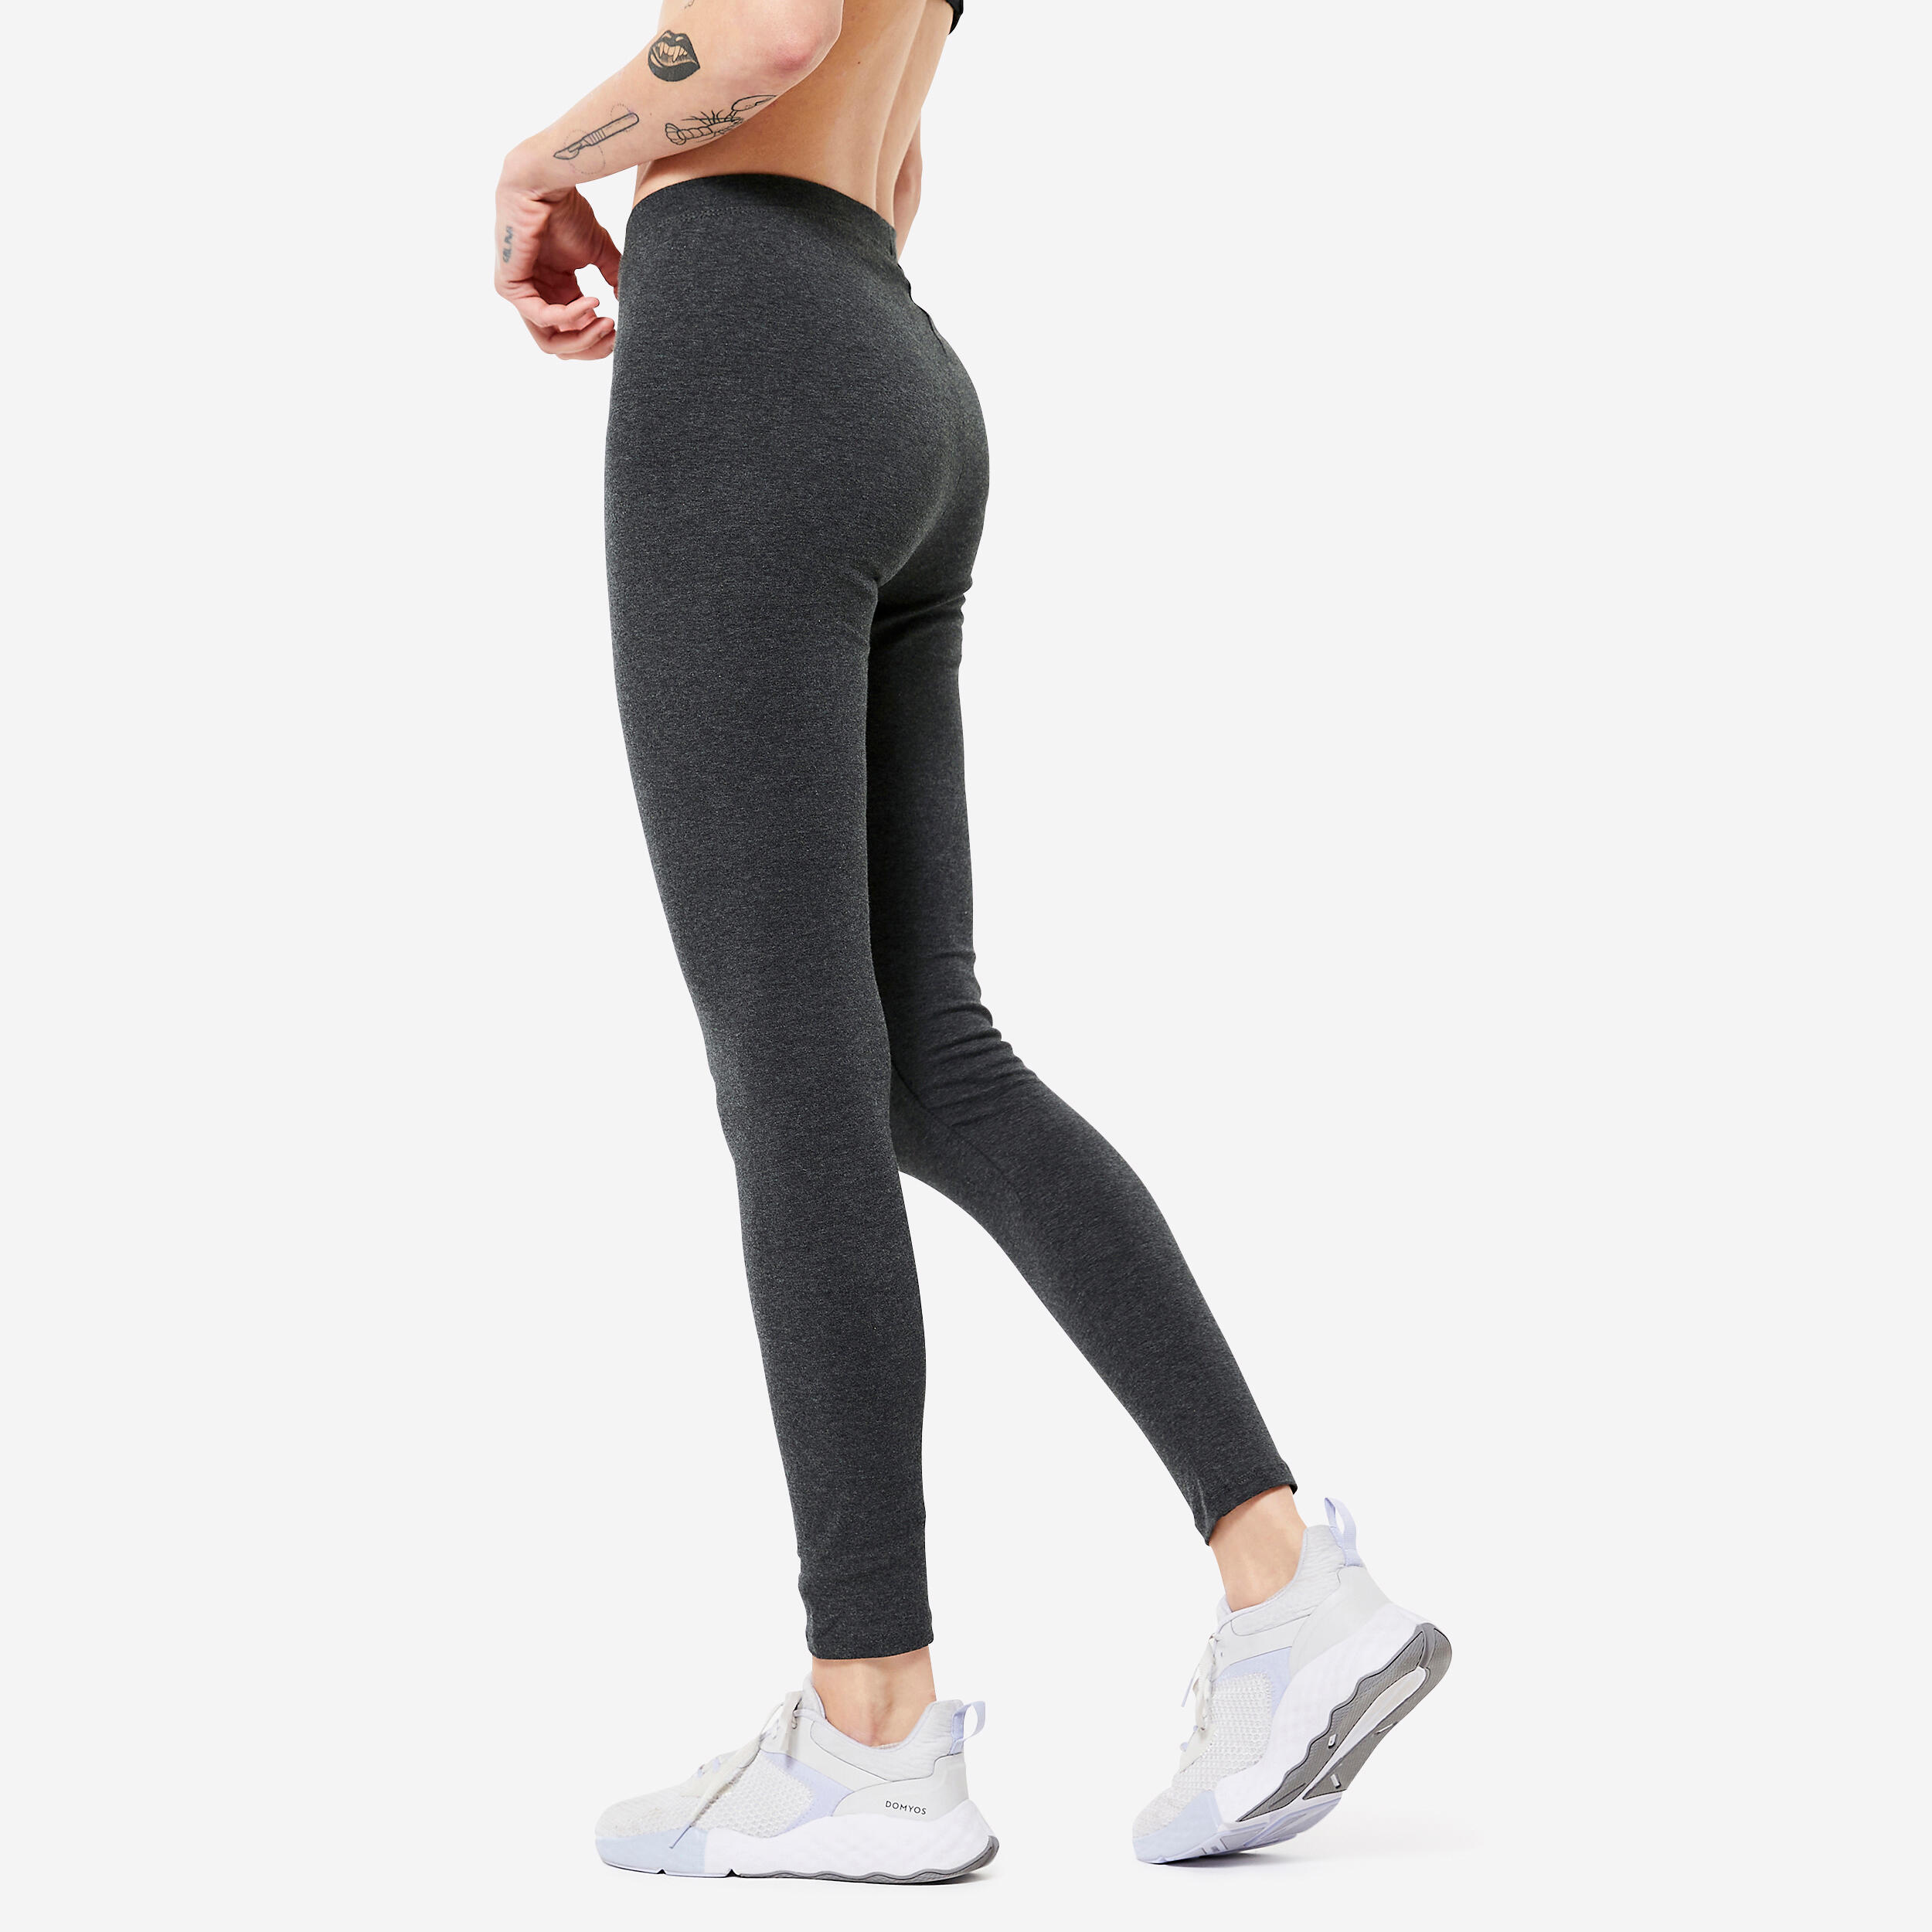 Women's Slim-Fit Fitness Leggings 100 - Mottled Dark Grey 4/5